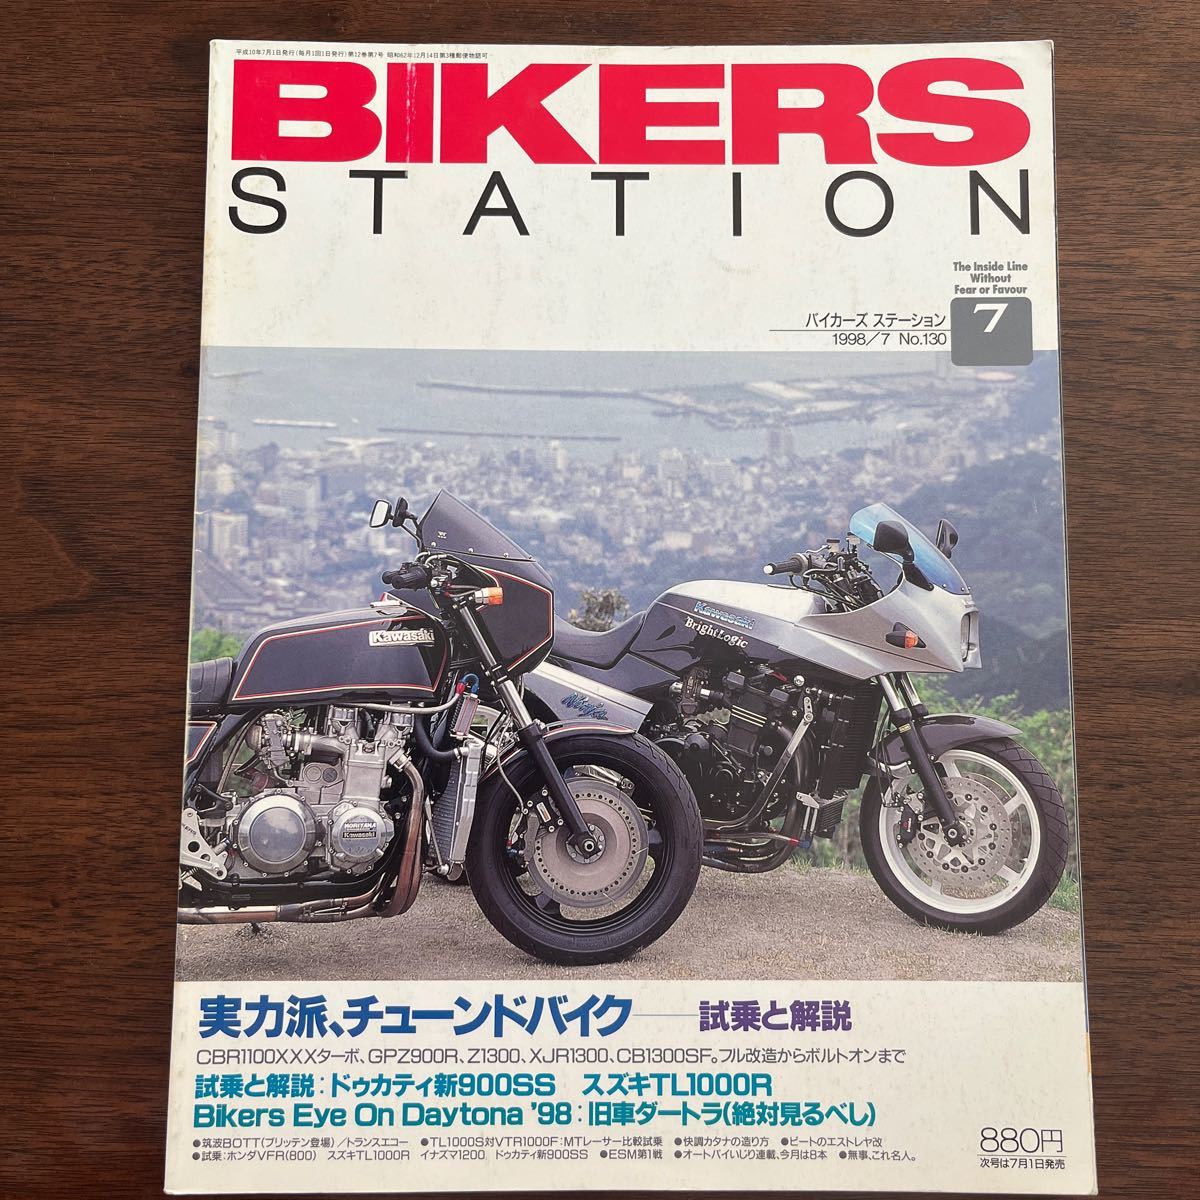 BIKERS STATION 1998/7 No.130 実力派、チューンドバイク